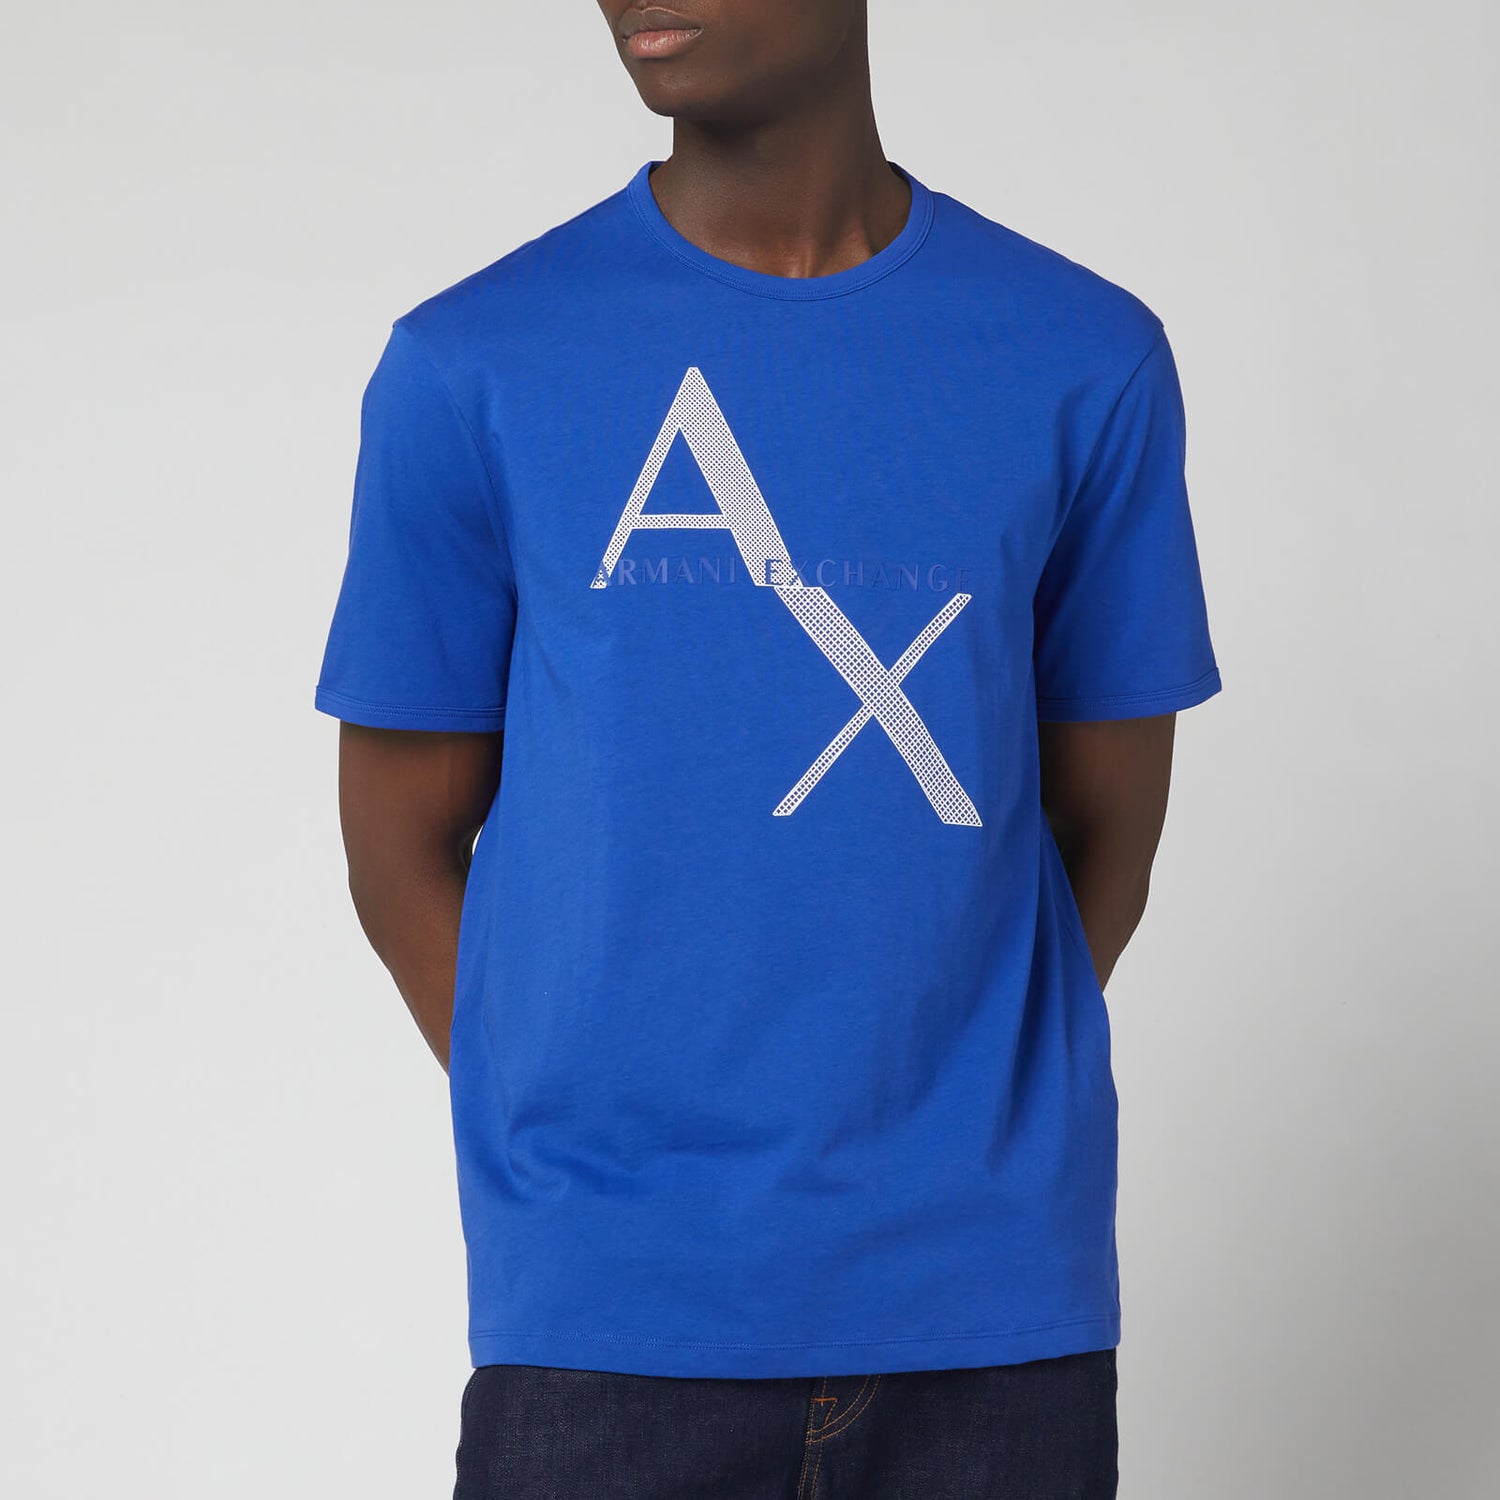 Armani Exchange Men's Large Ax Logo T-Shirt - Ultra Marine